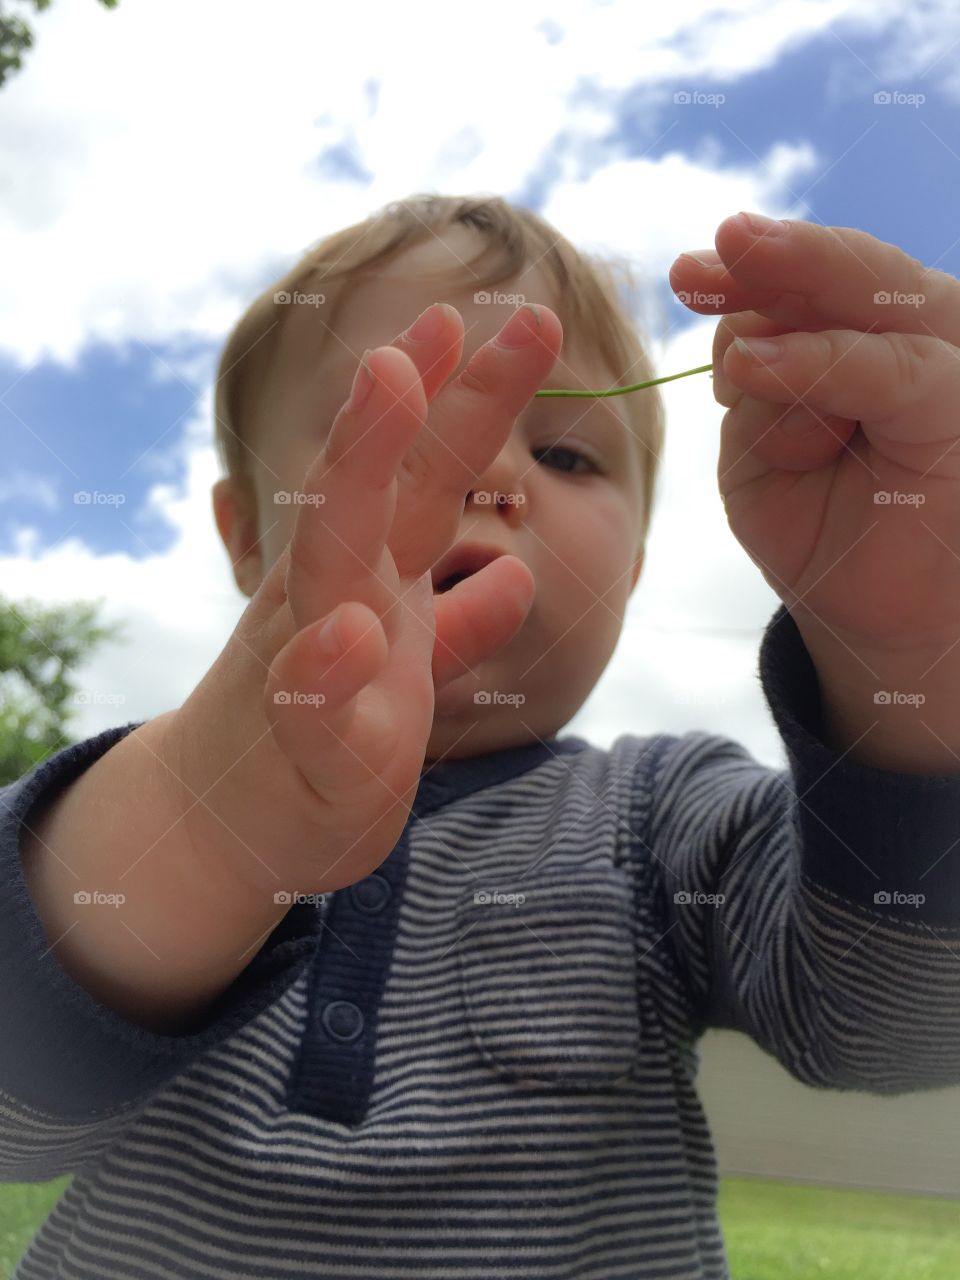 Small boy holding twig